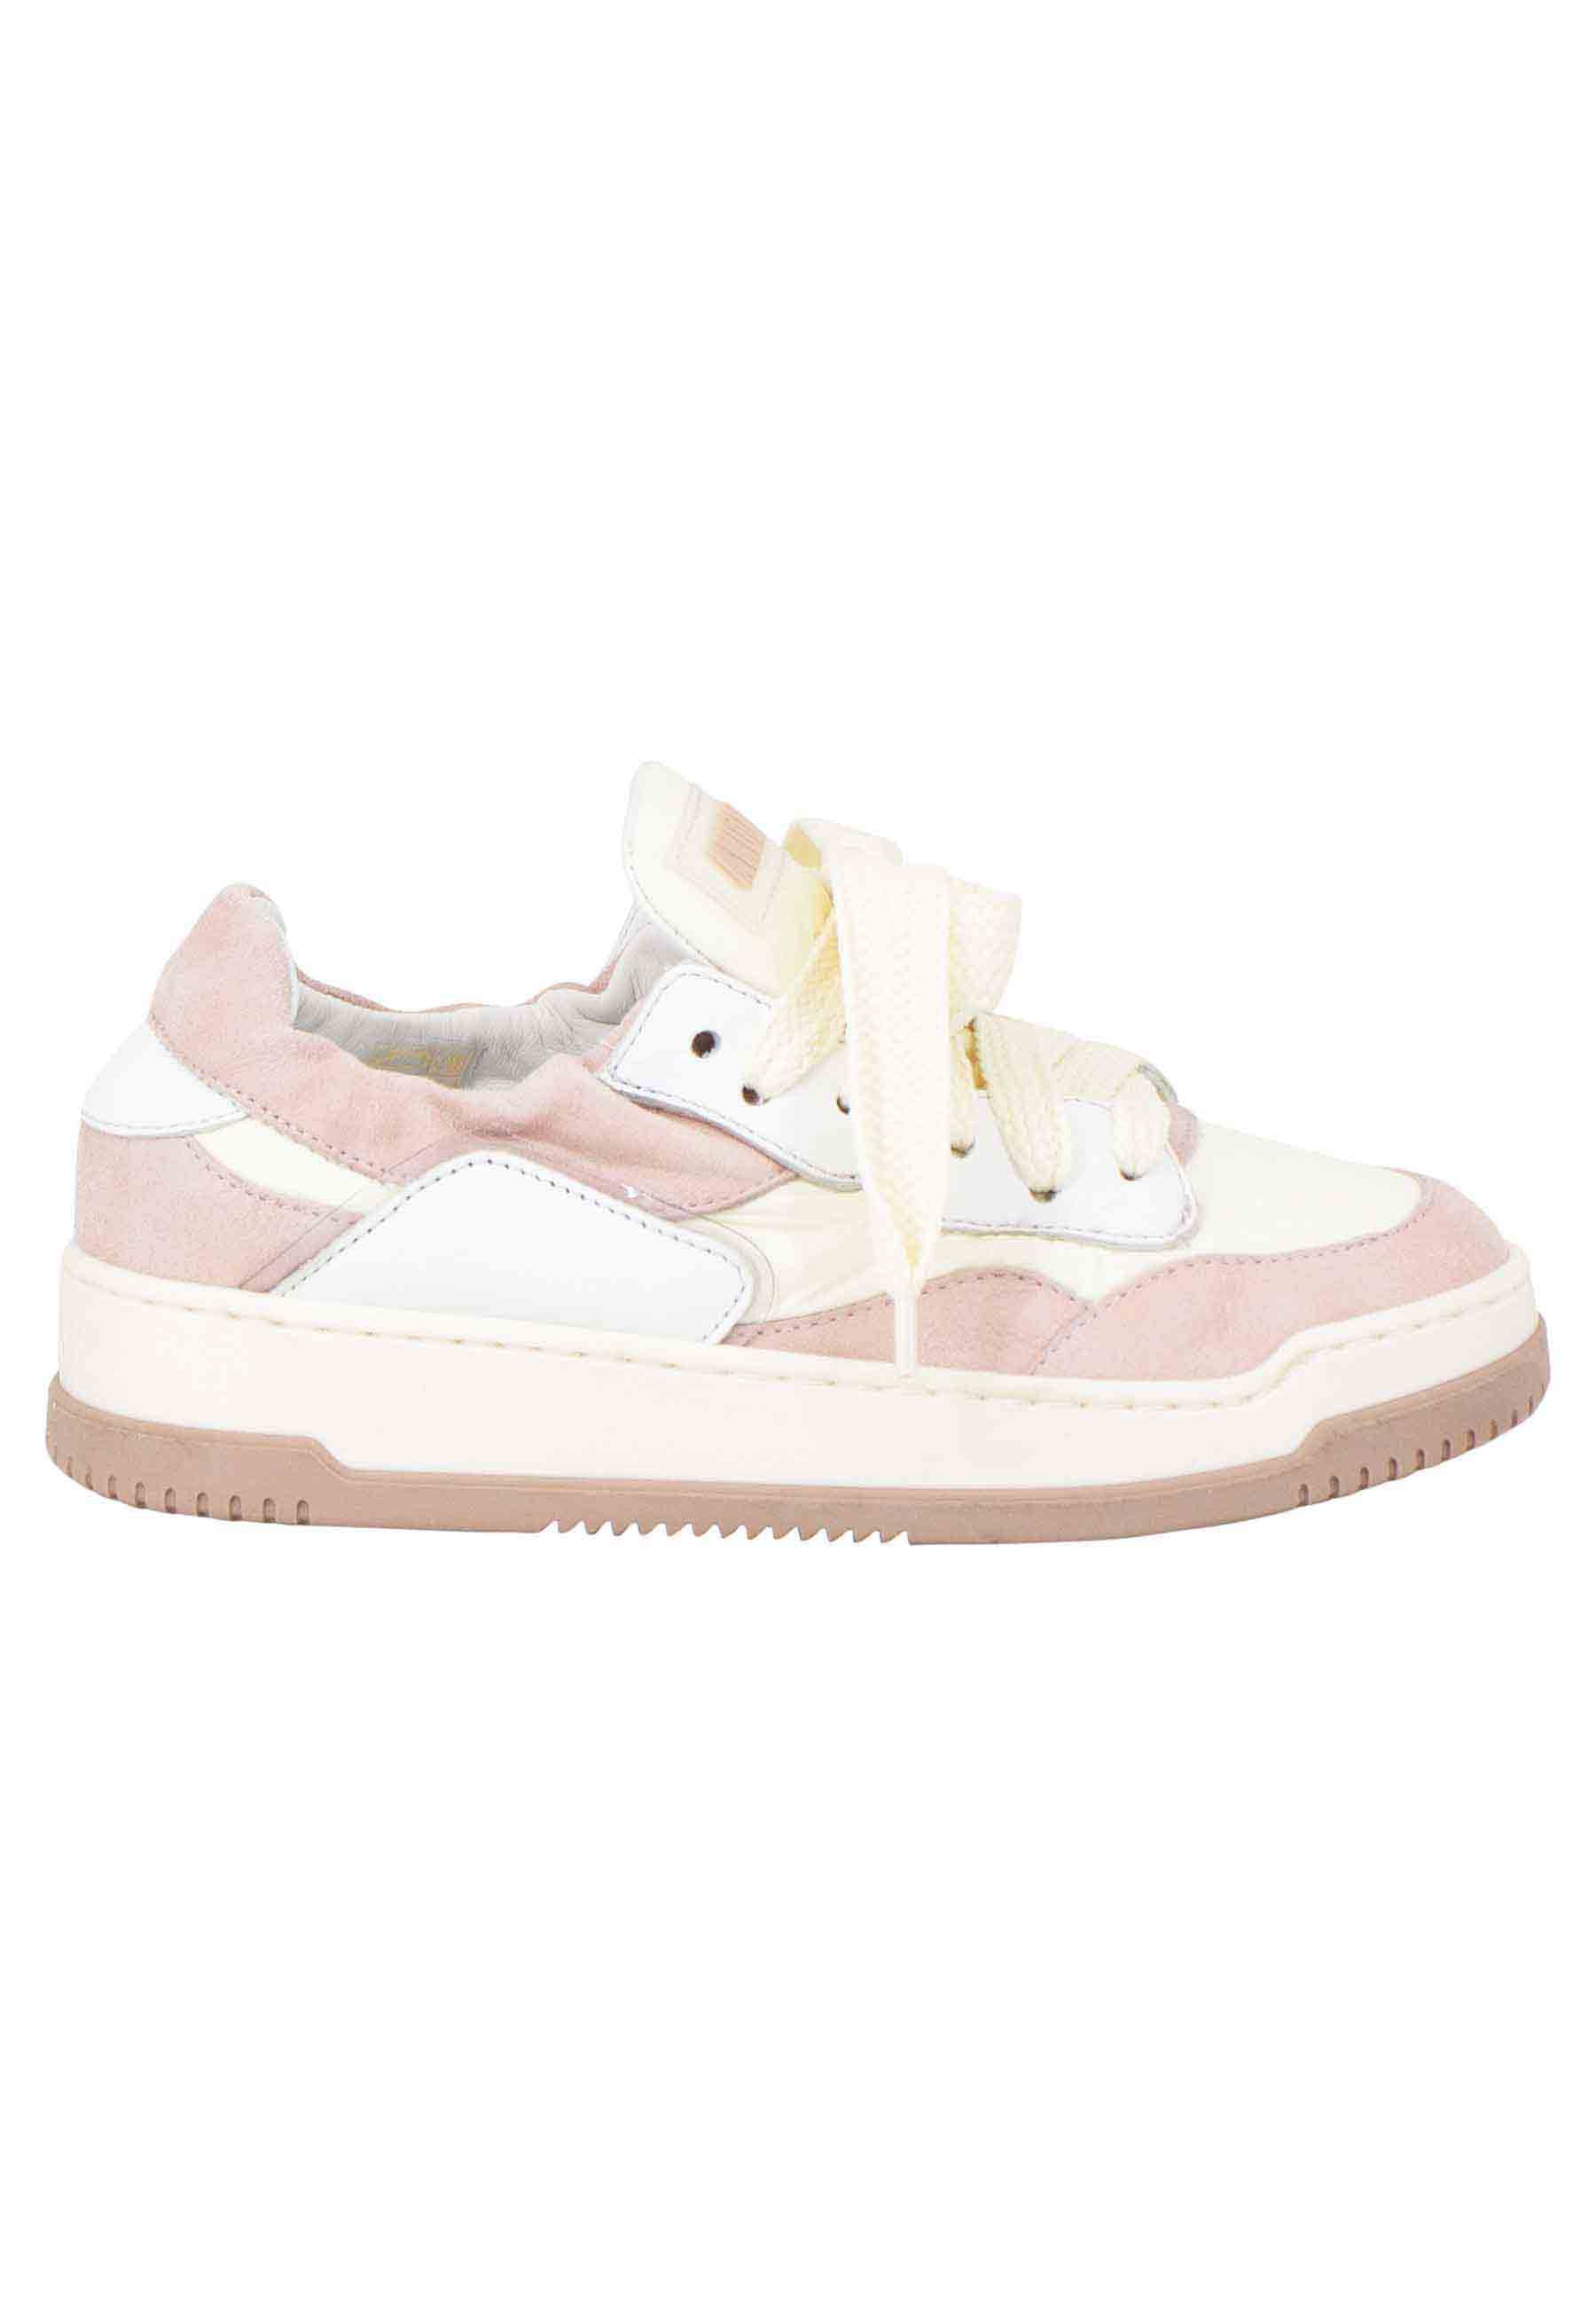 Sneakers donna in pelle beige e rosa con fondo gomma